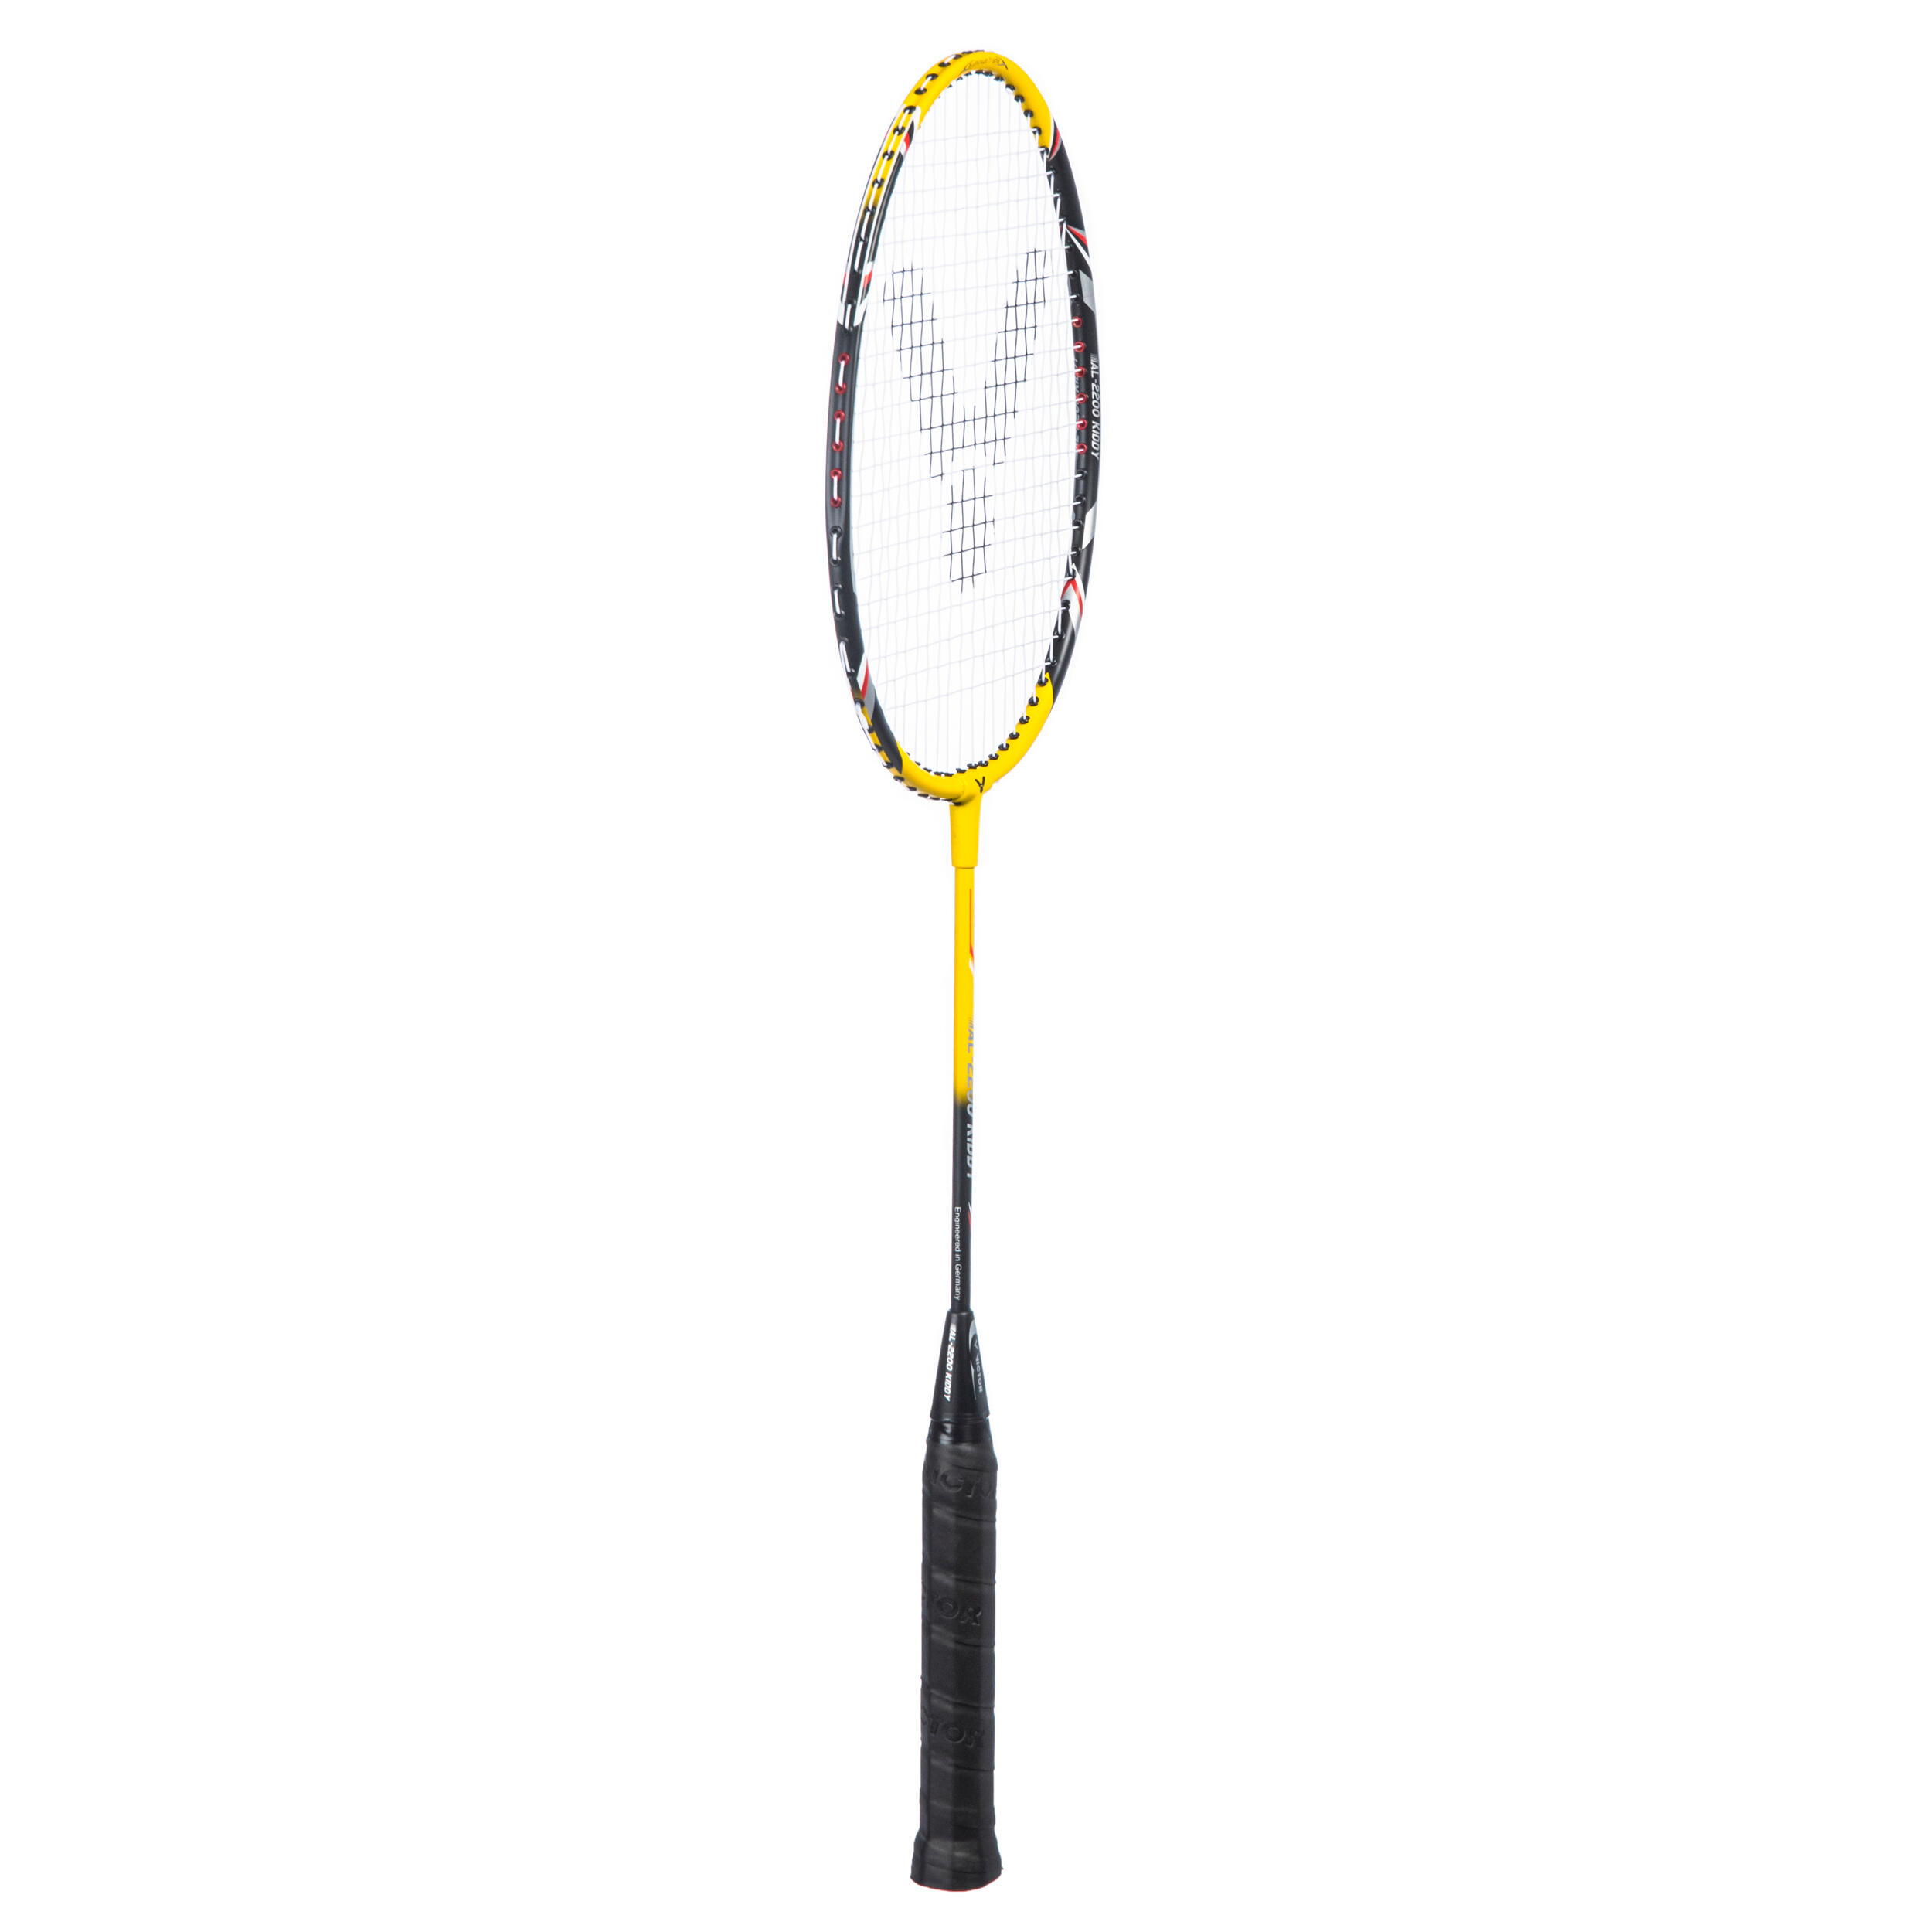 Kids' Badminton Racket AL 2200 Kiddy 2/4